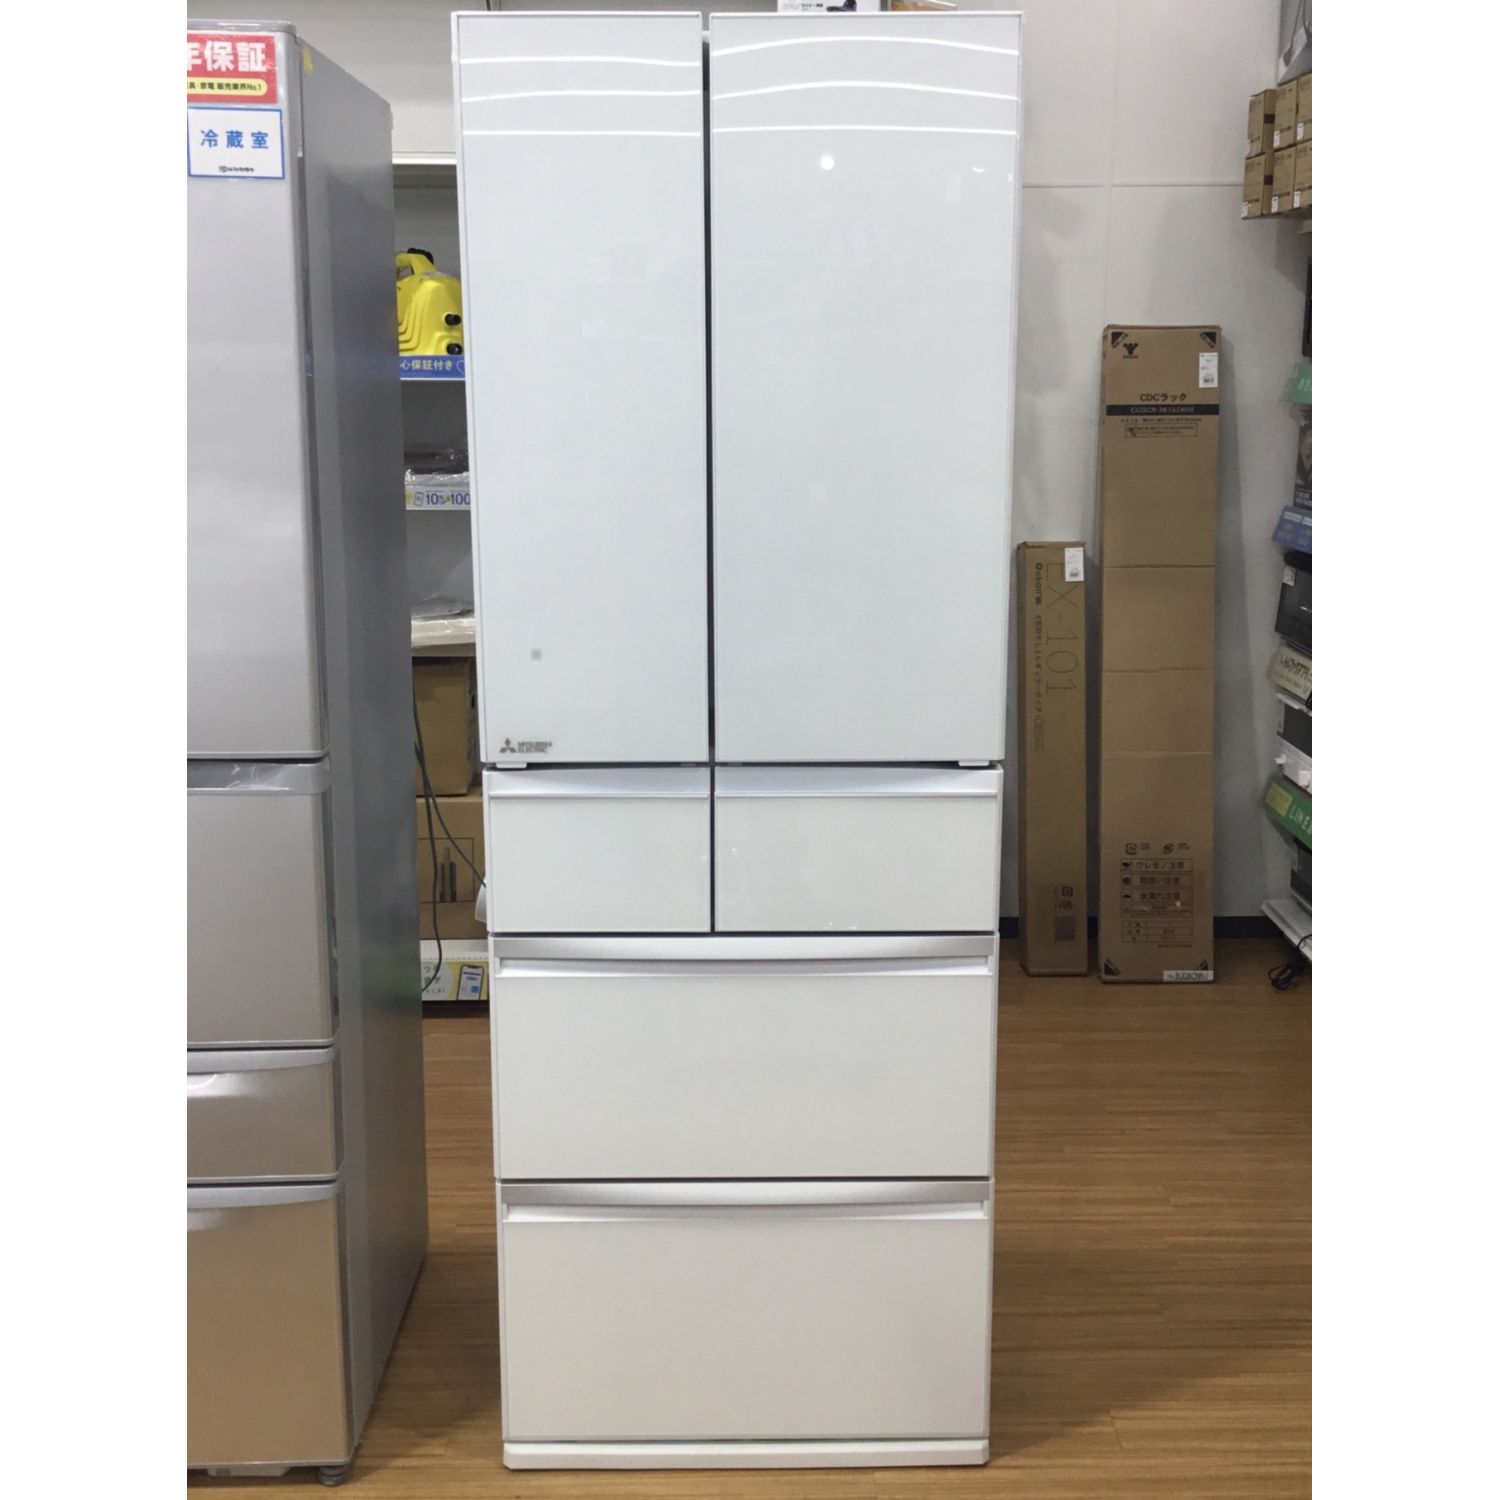 2016年製 MITSUBISHI 517Lフレンチドア冷蔵庫 MR-WX53Z-BR2 - キッチン家電